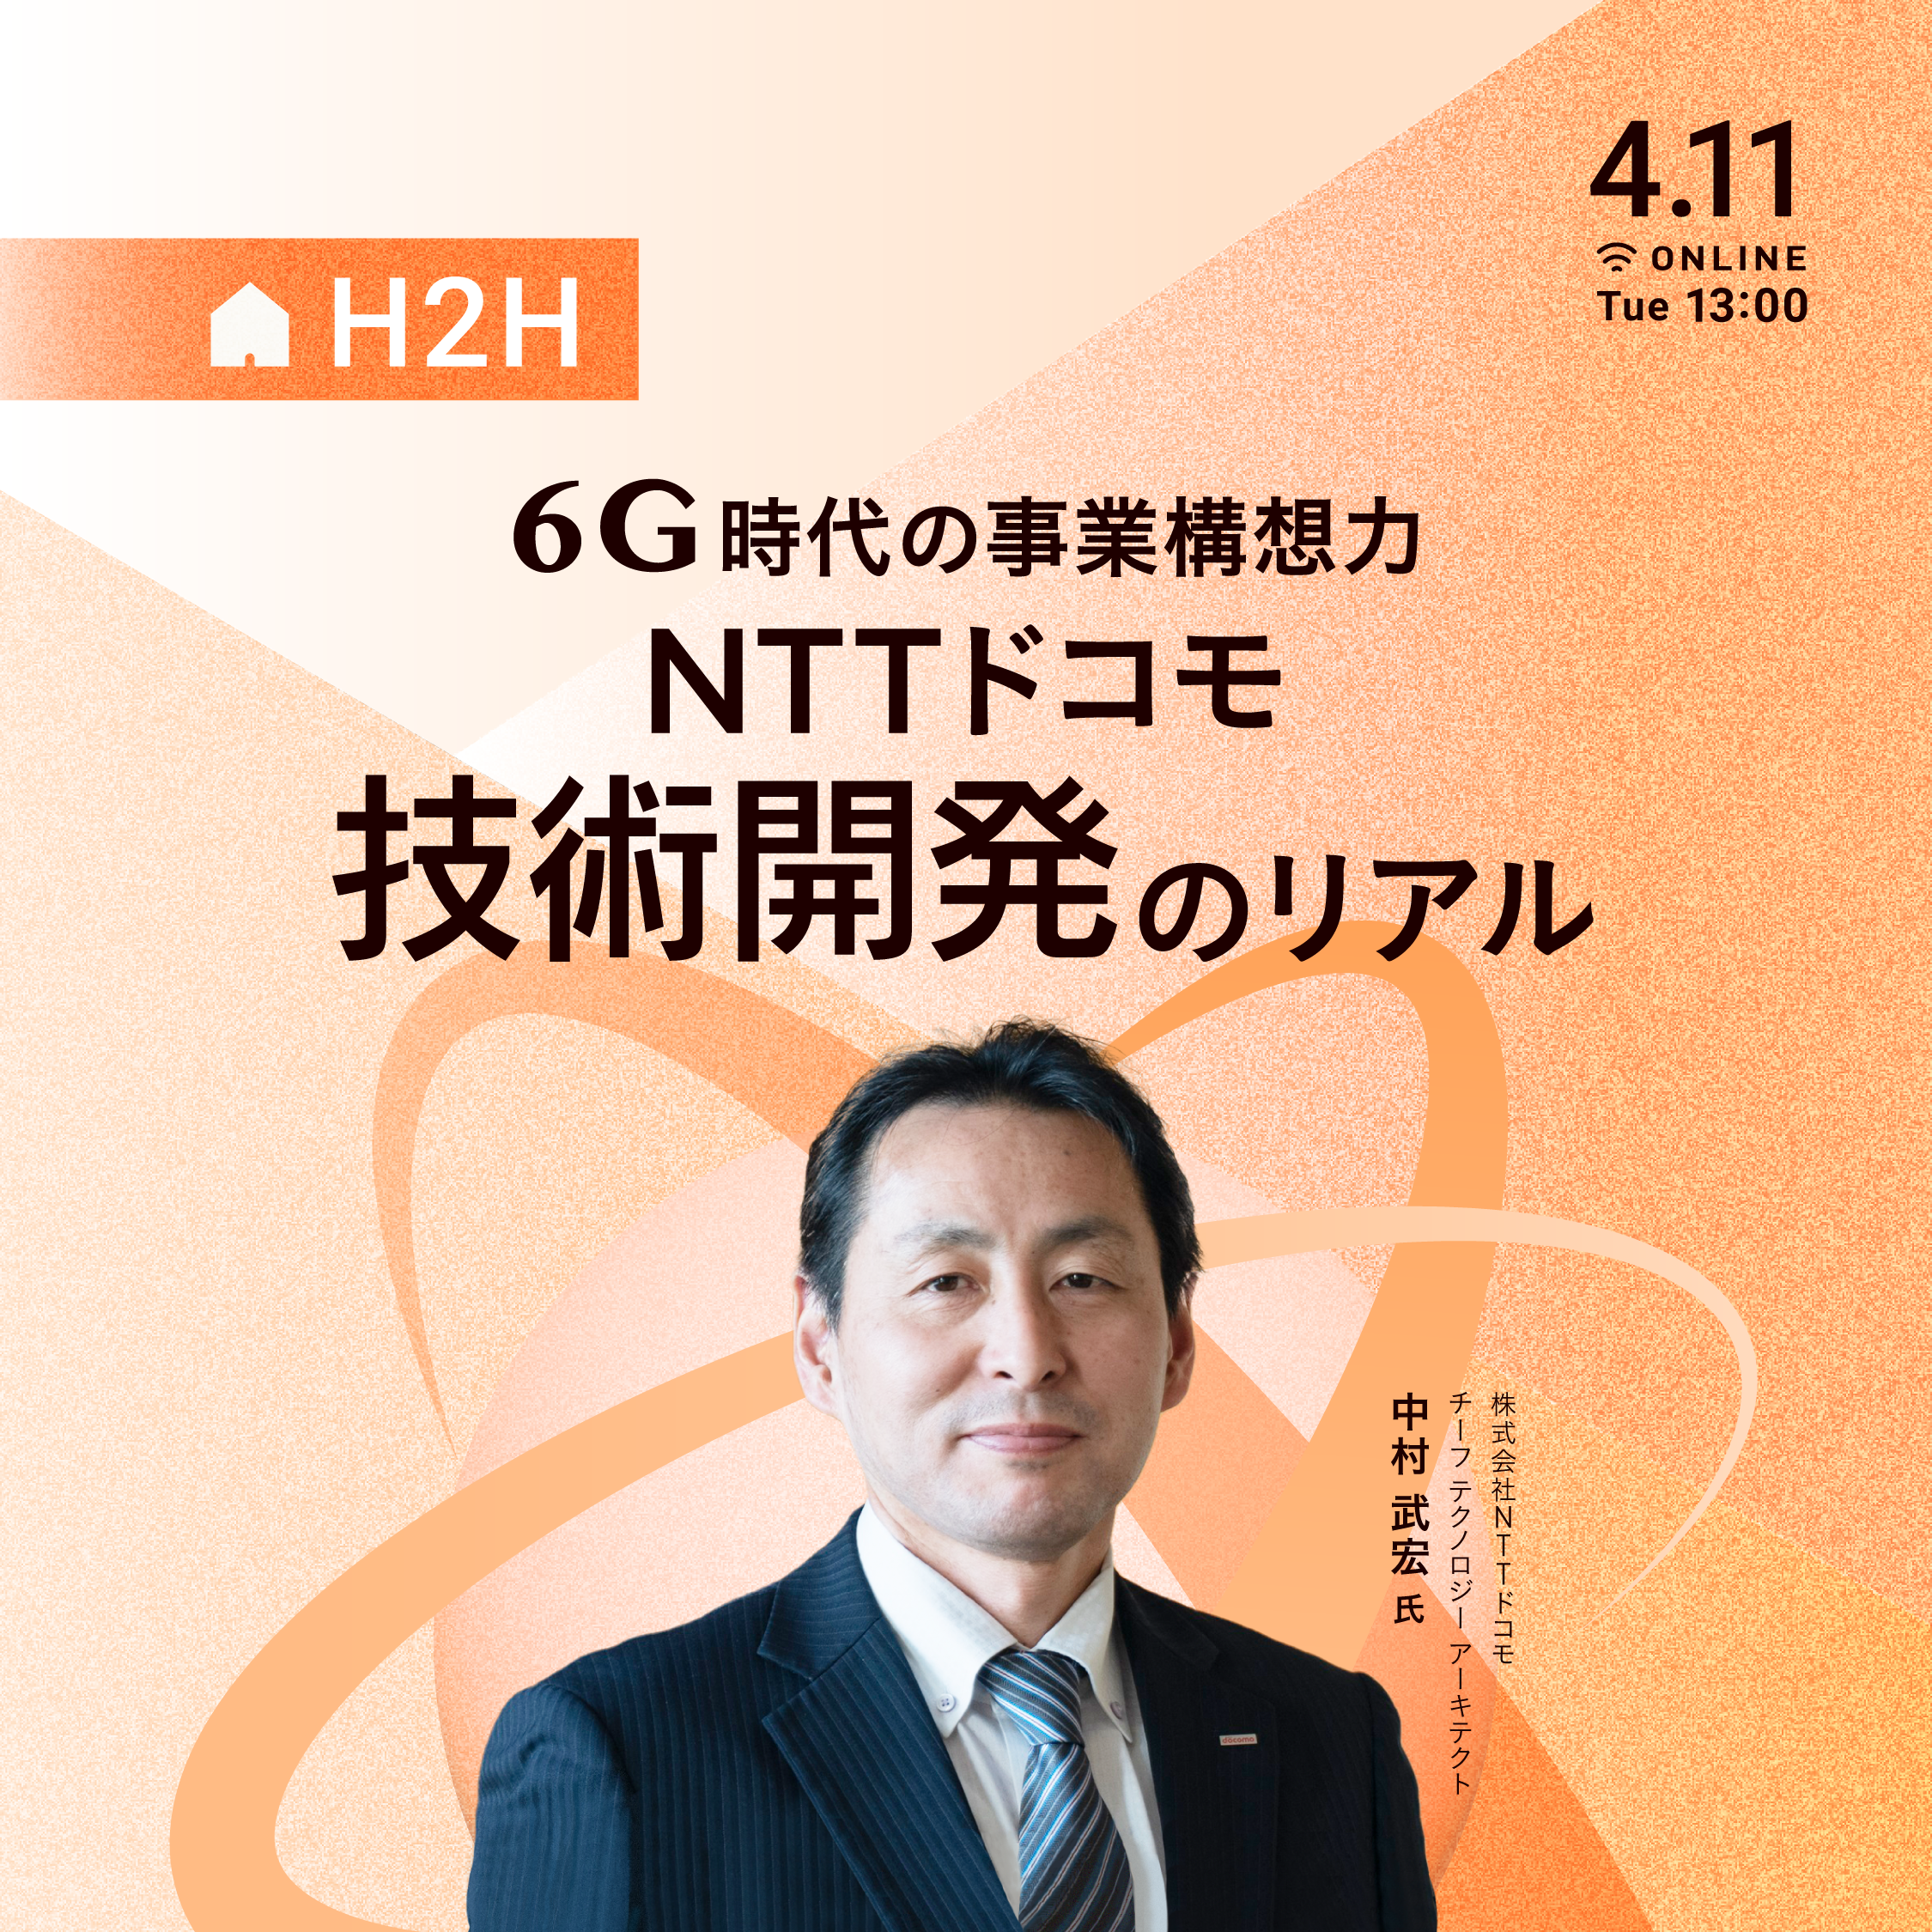 6G時代の事業構想力 - NTTドコモ 技術開発のリアル - | 経済情報